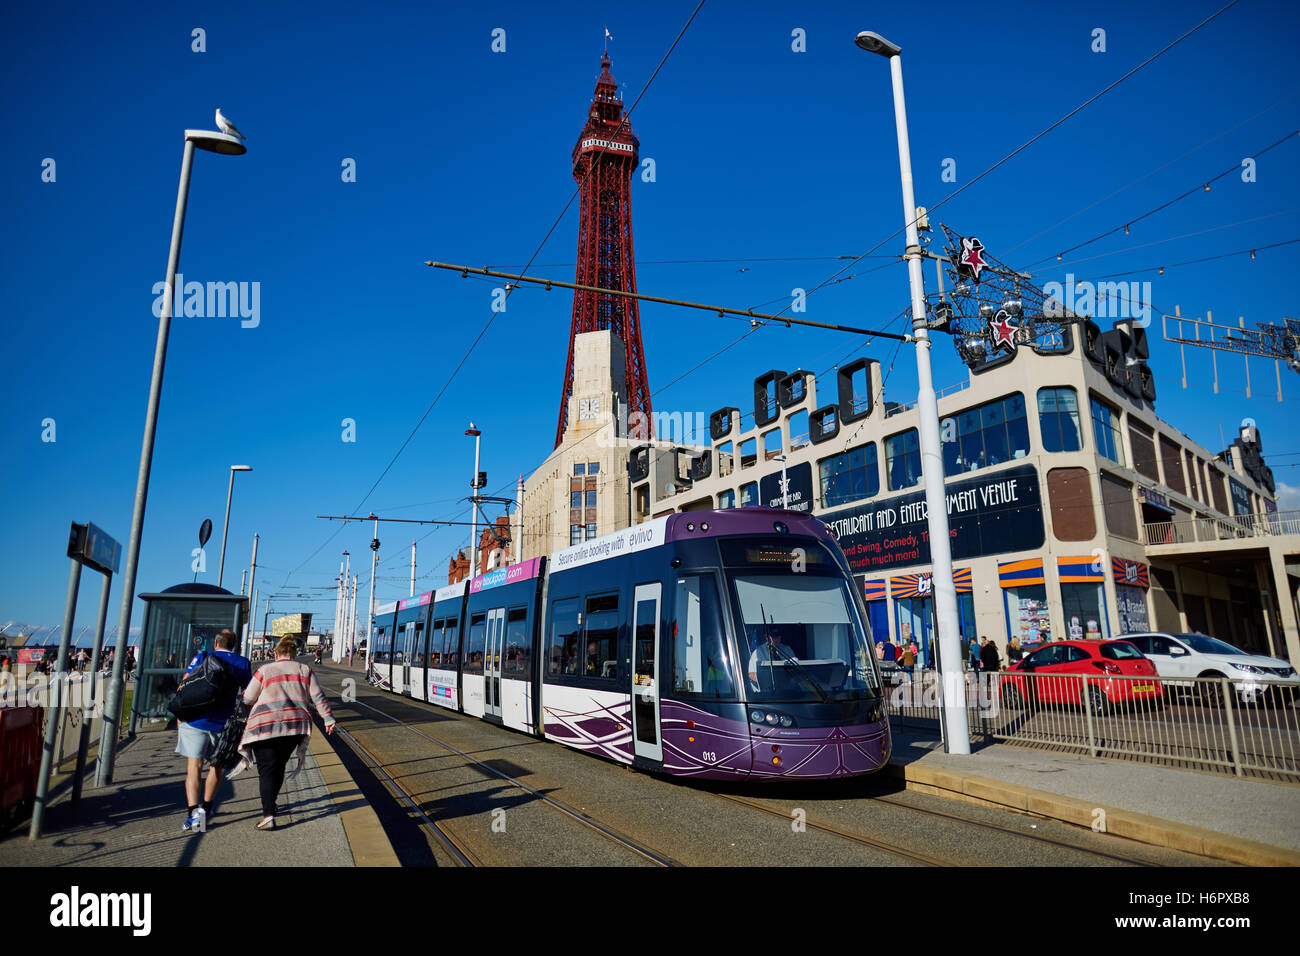 Blackpool Ftower moderne Straßenbahn Stadtbahn Urlaub Meer Seite Resort Lancashire Sehenswürdigkeiten Stadt Exemplar blauer Himmel d Turm Stockfoto